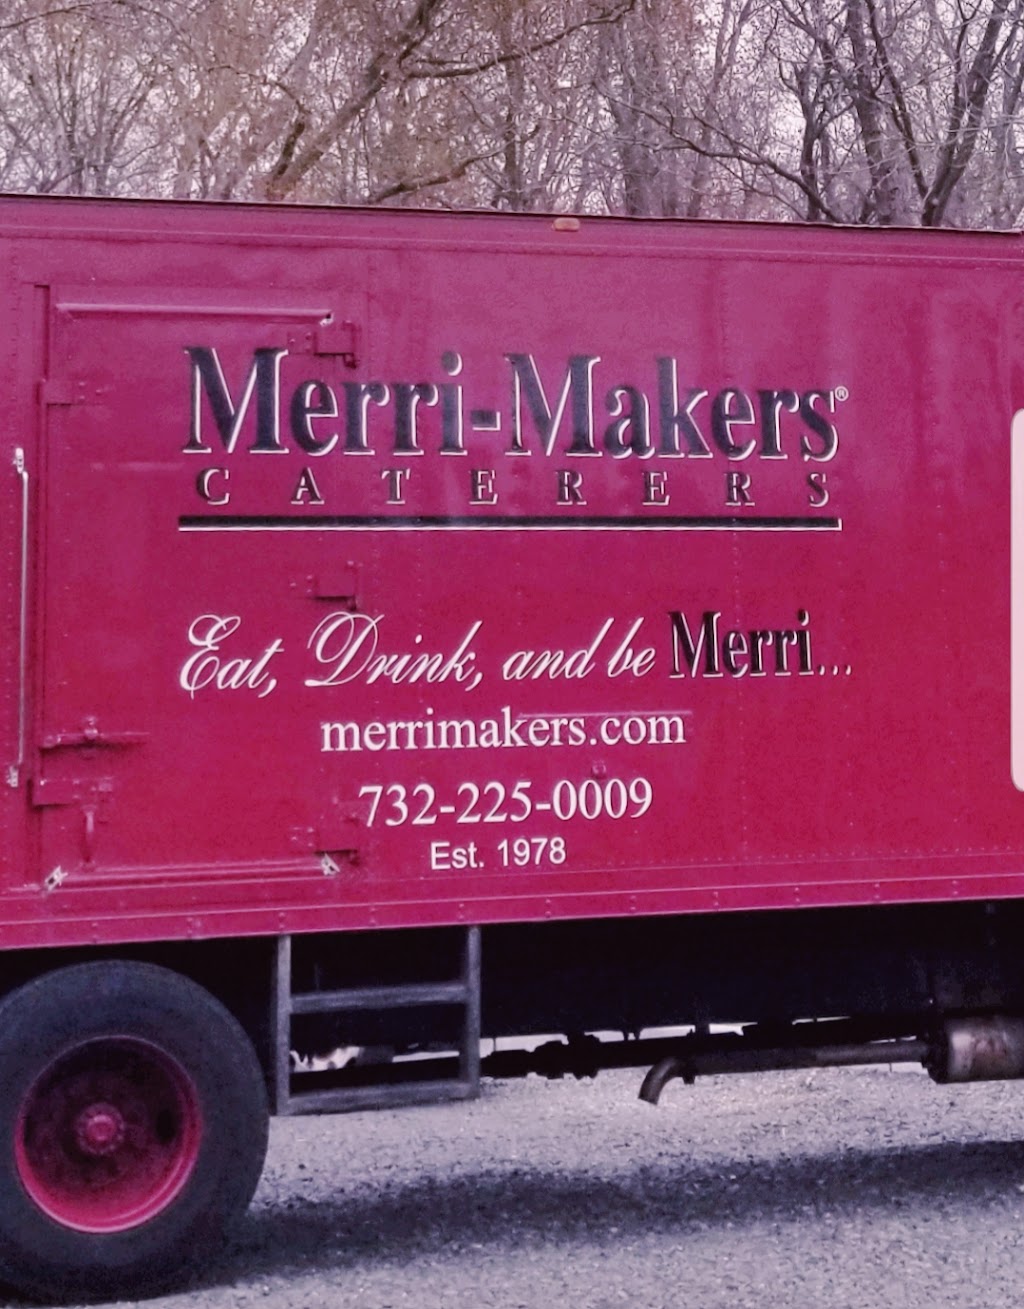 Merri Makers Chefs Market | 511 Herbertsville Rd Side Bldg, Brick Township, NJ 08724 | Phone: (908) 907-1573